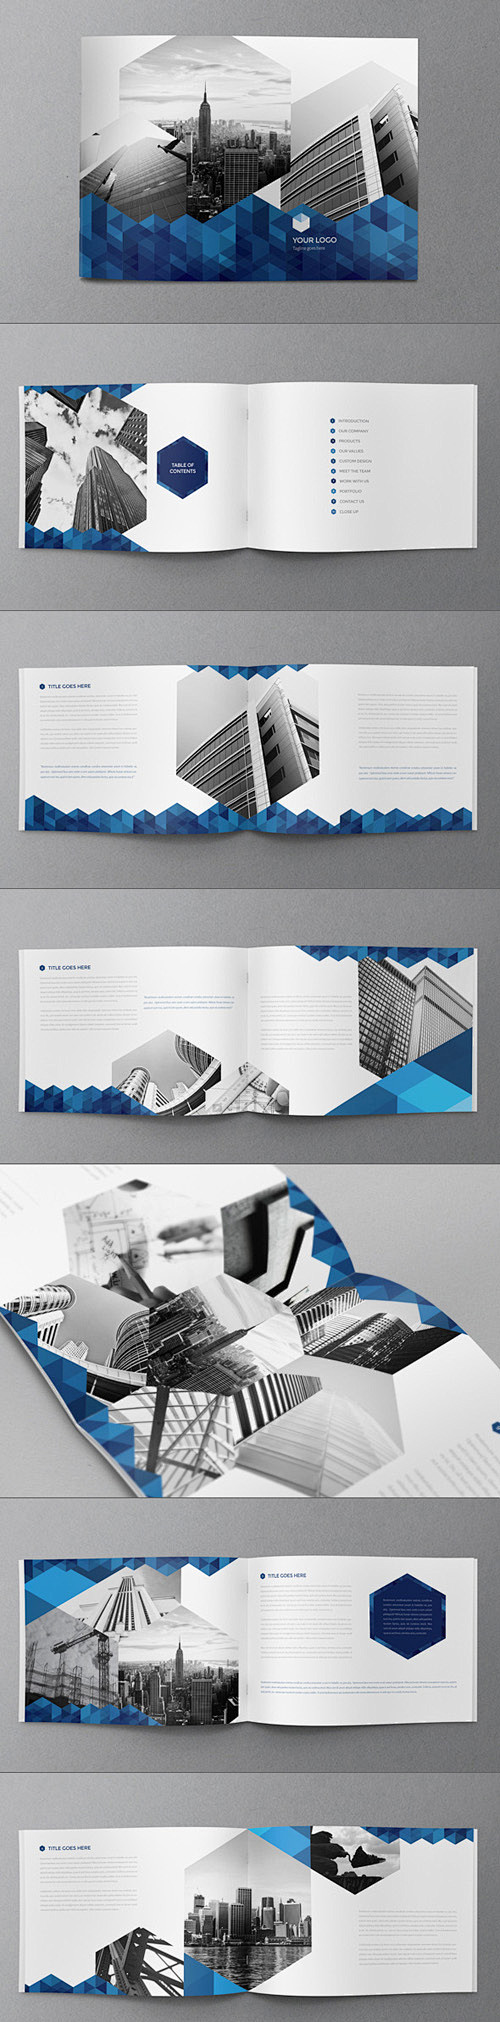 15个创意企业画册设计模板